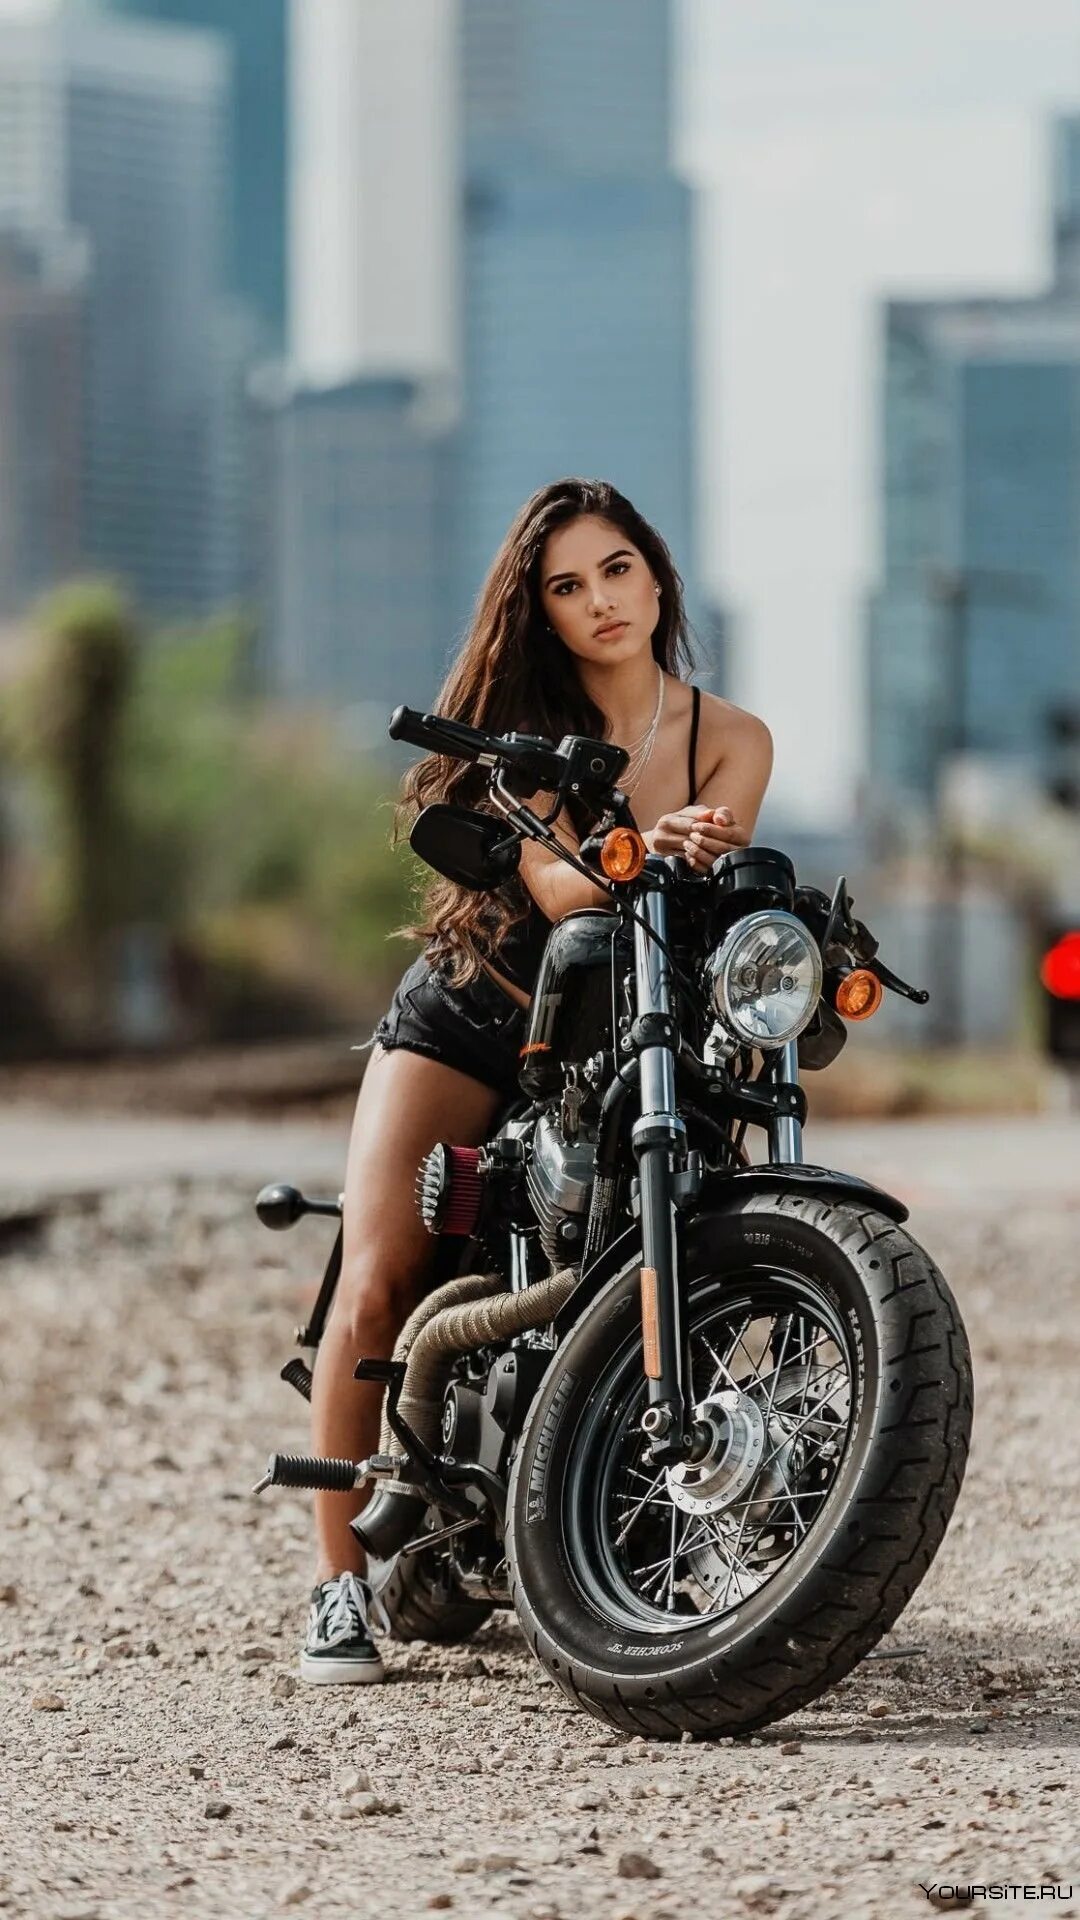 Про девушку на мотоцикле. Девушка на мотоцикле. Фотосессия на мотоцикле девушки.